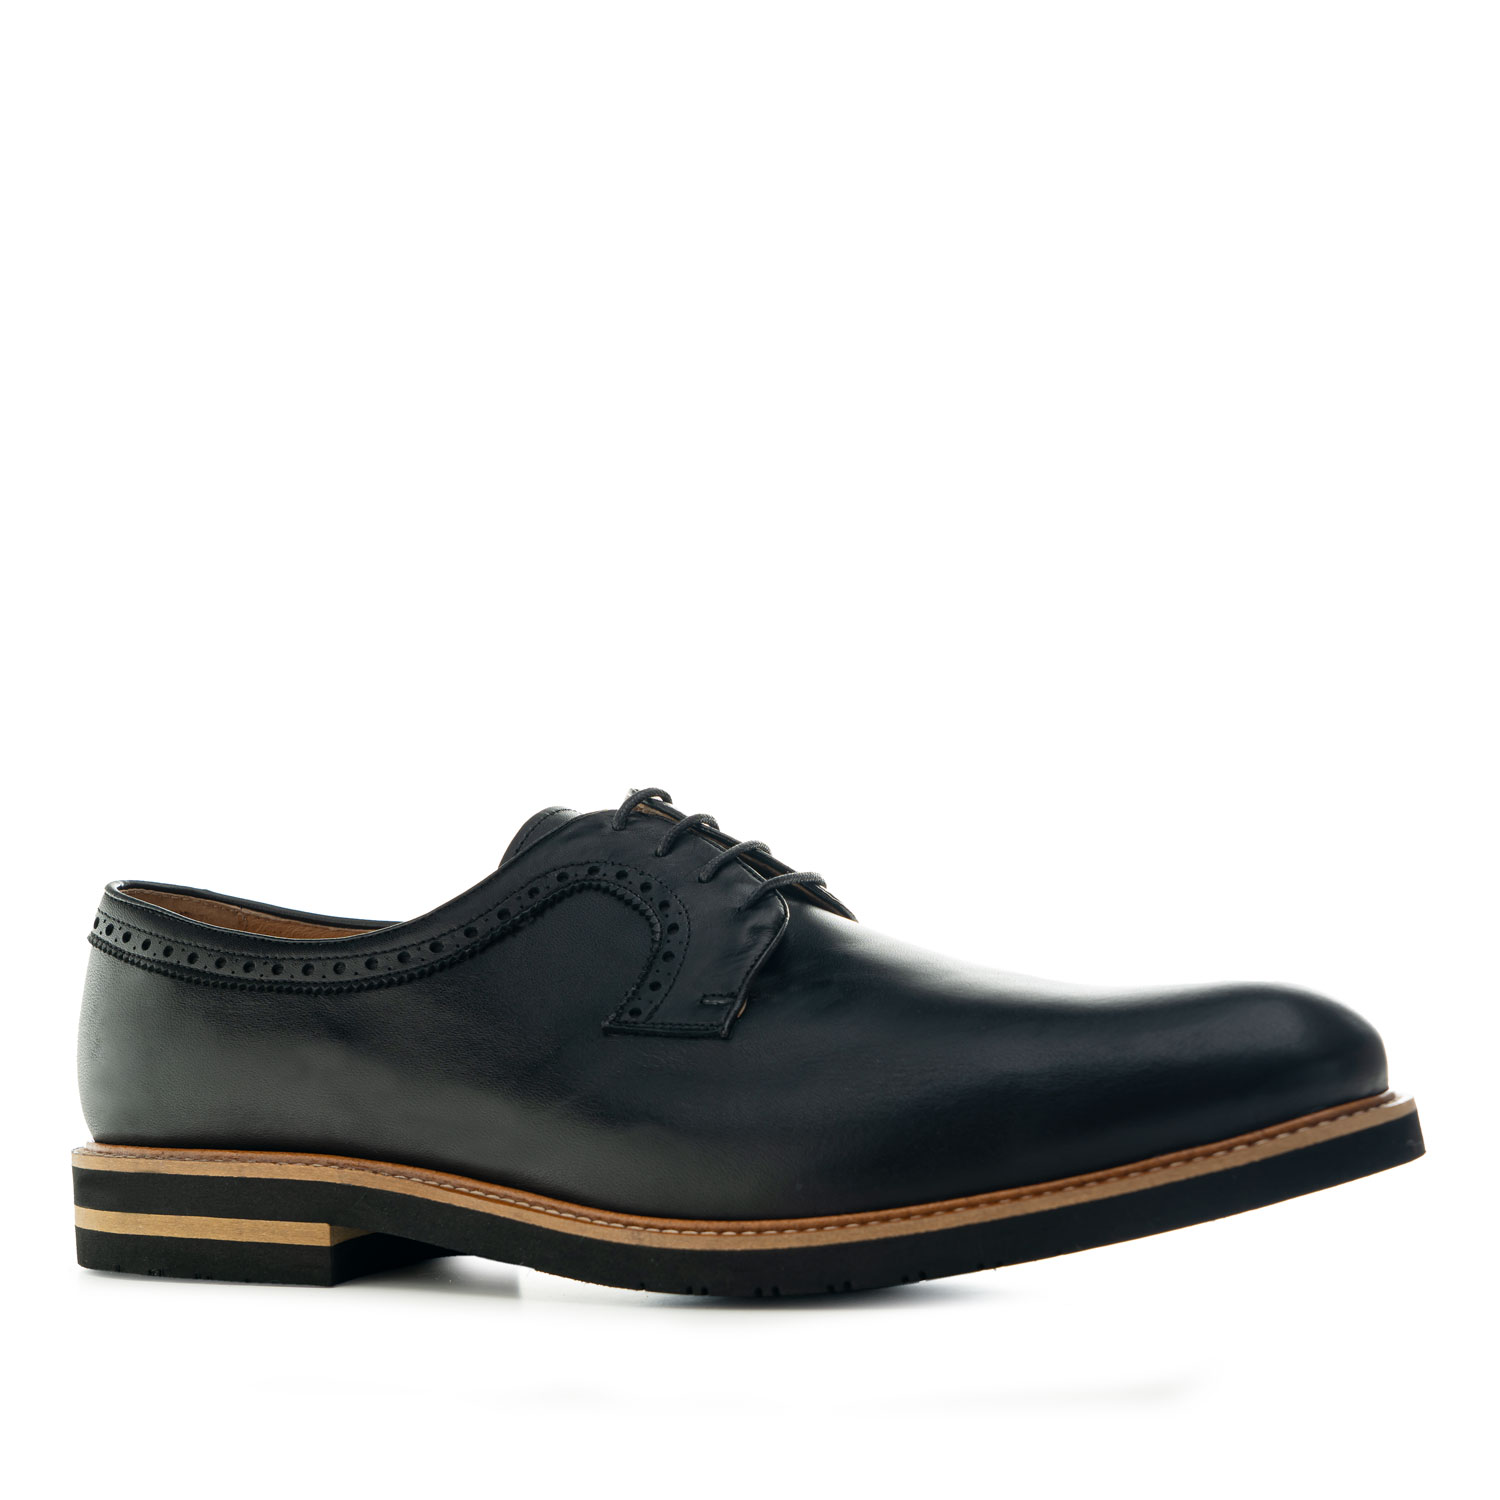 Zapato estilo Oxford en Cuero de color Negro